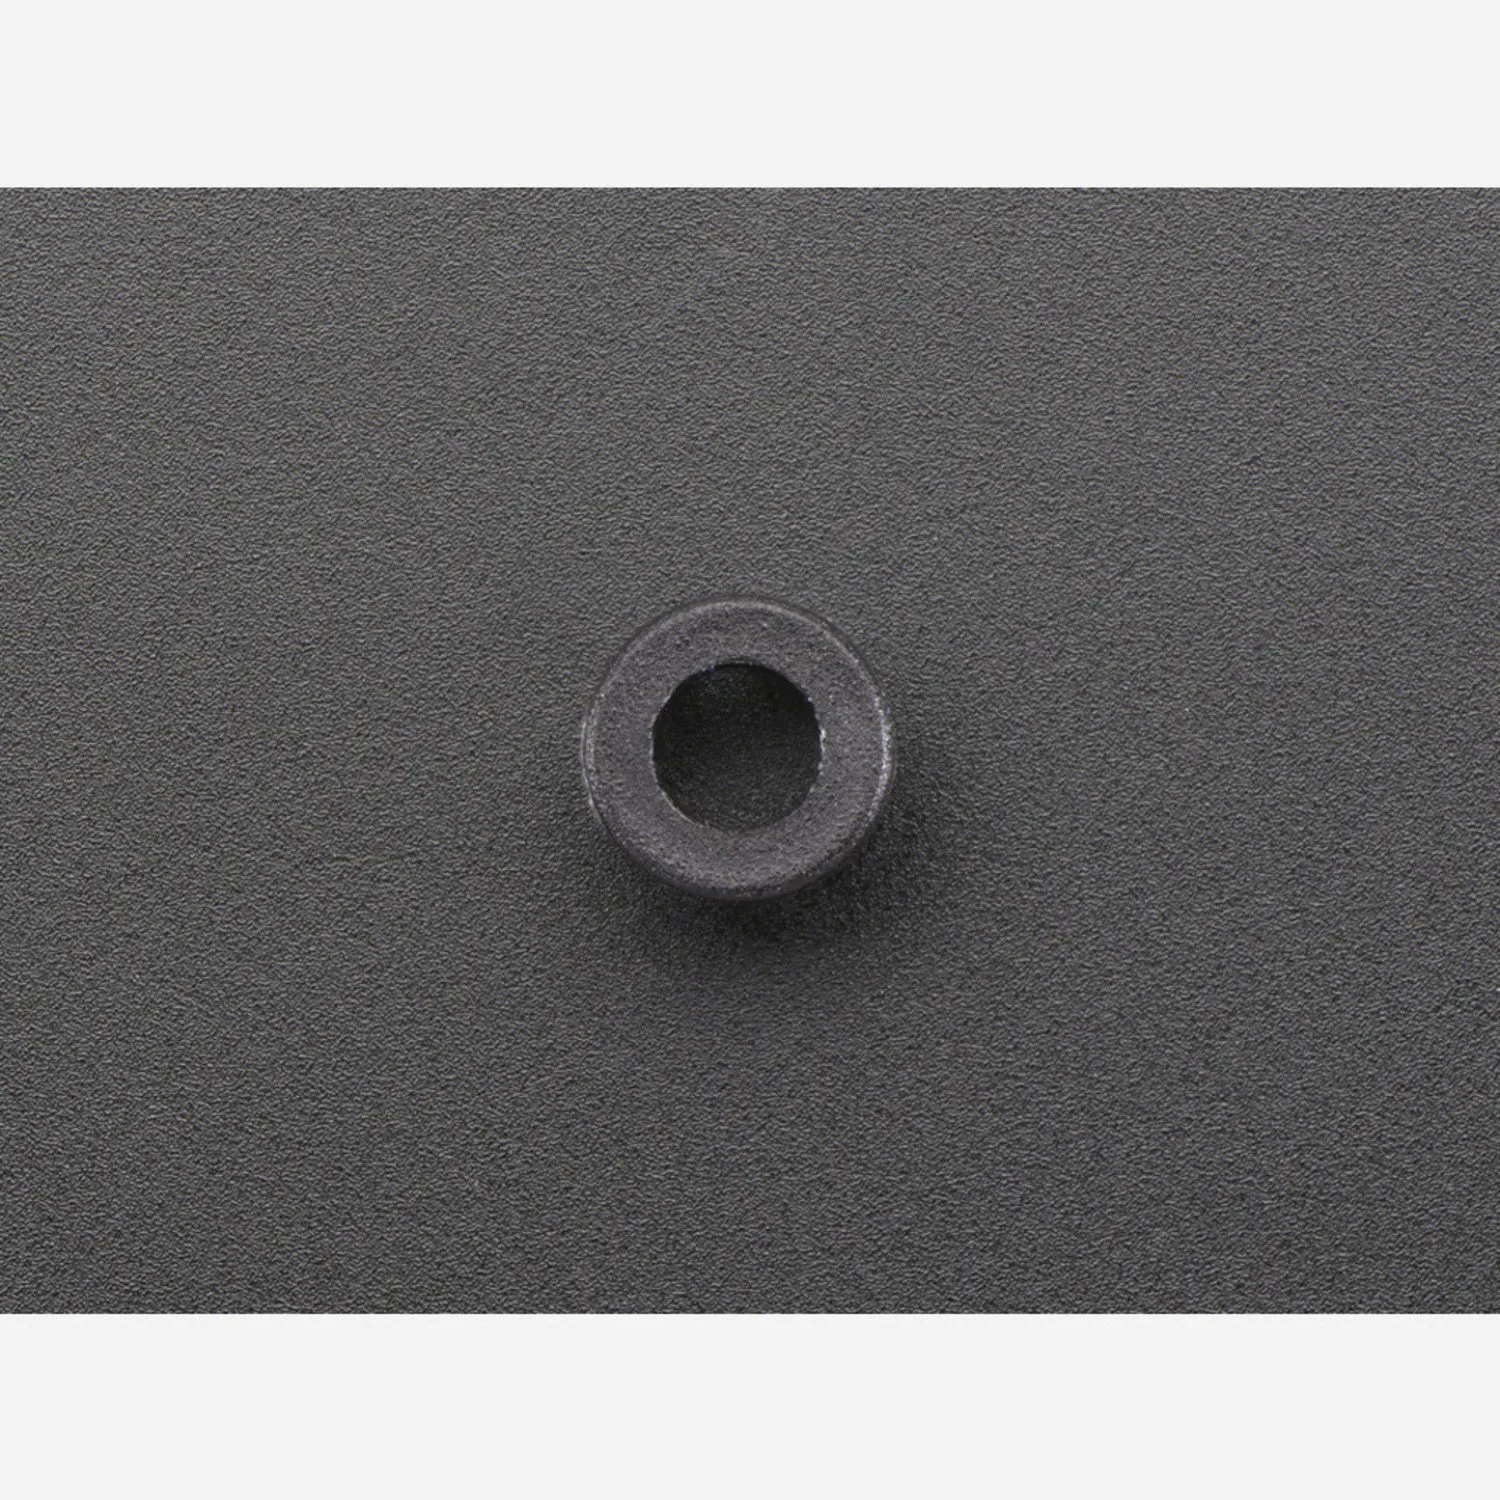 Photo of 3mm Plastic Bevel LED Holder - Pack of 5